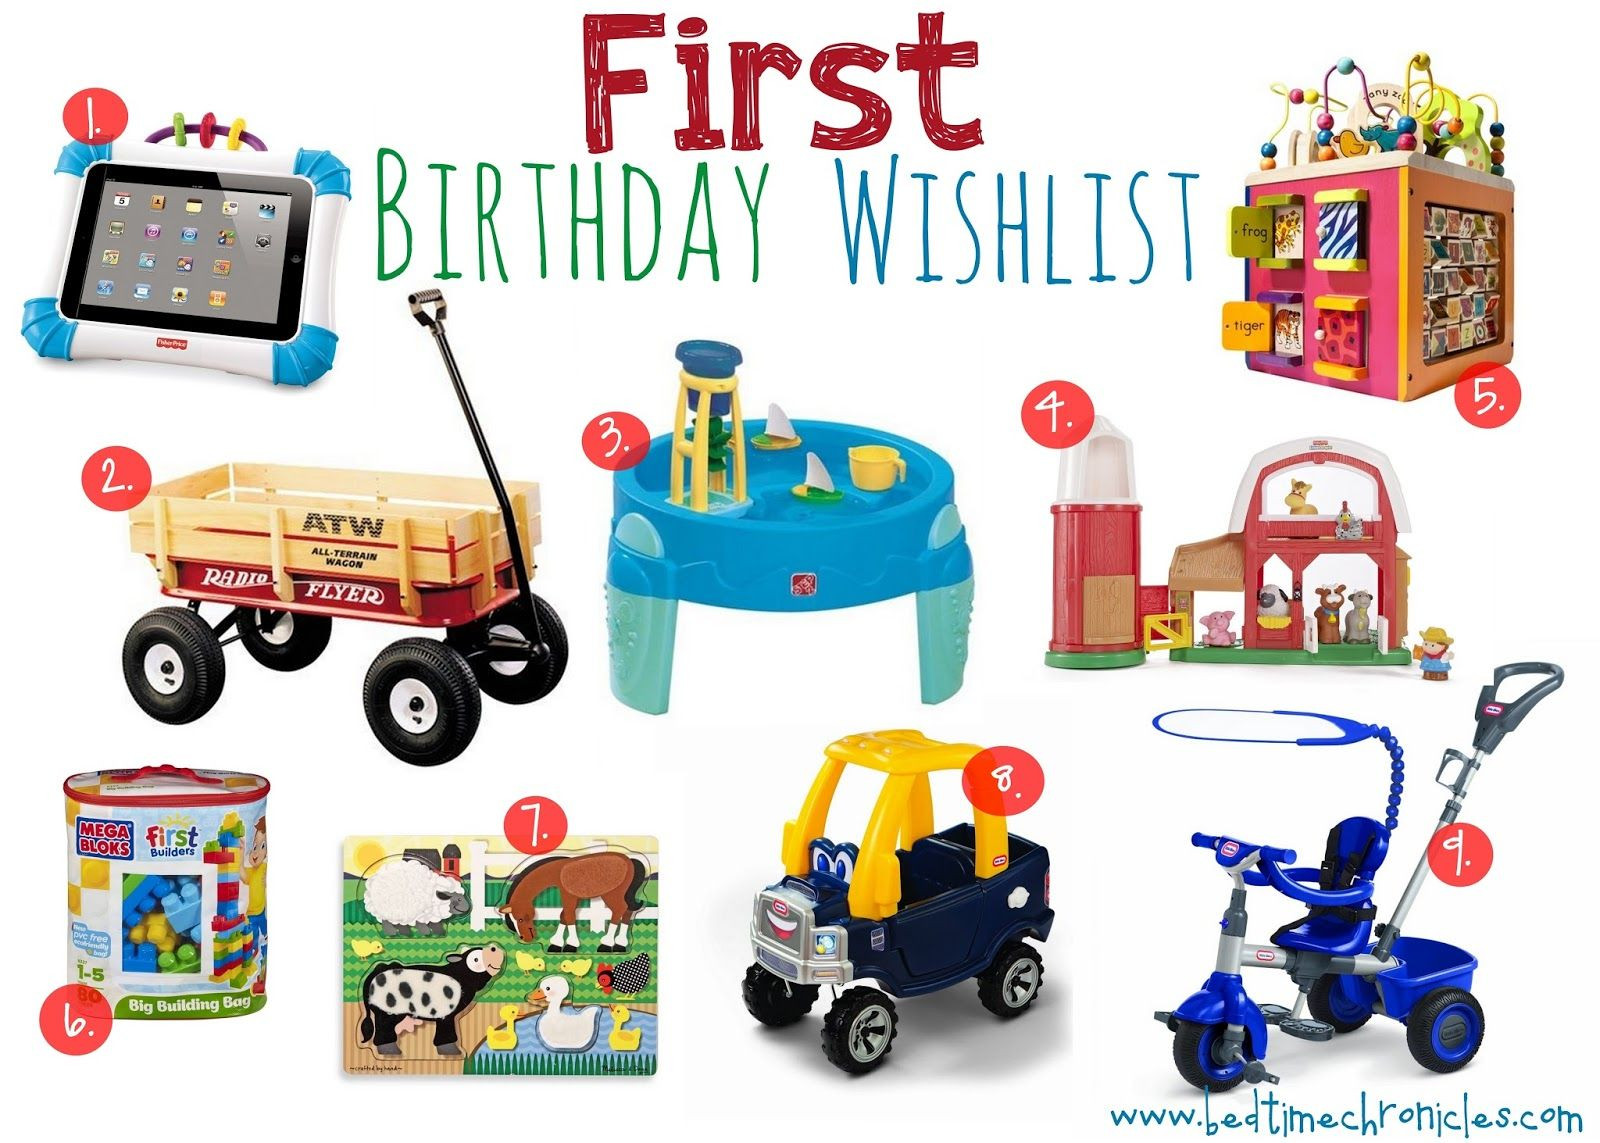 1St Birthday Boy Gift Ideas
 The Bedtime Chronicles [Birthday] First Birthday Wishlist